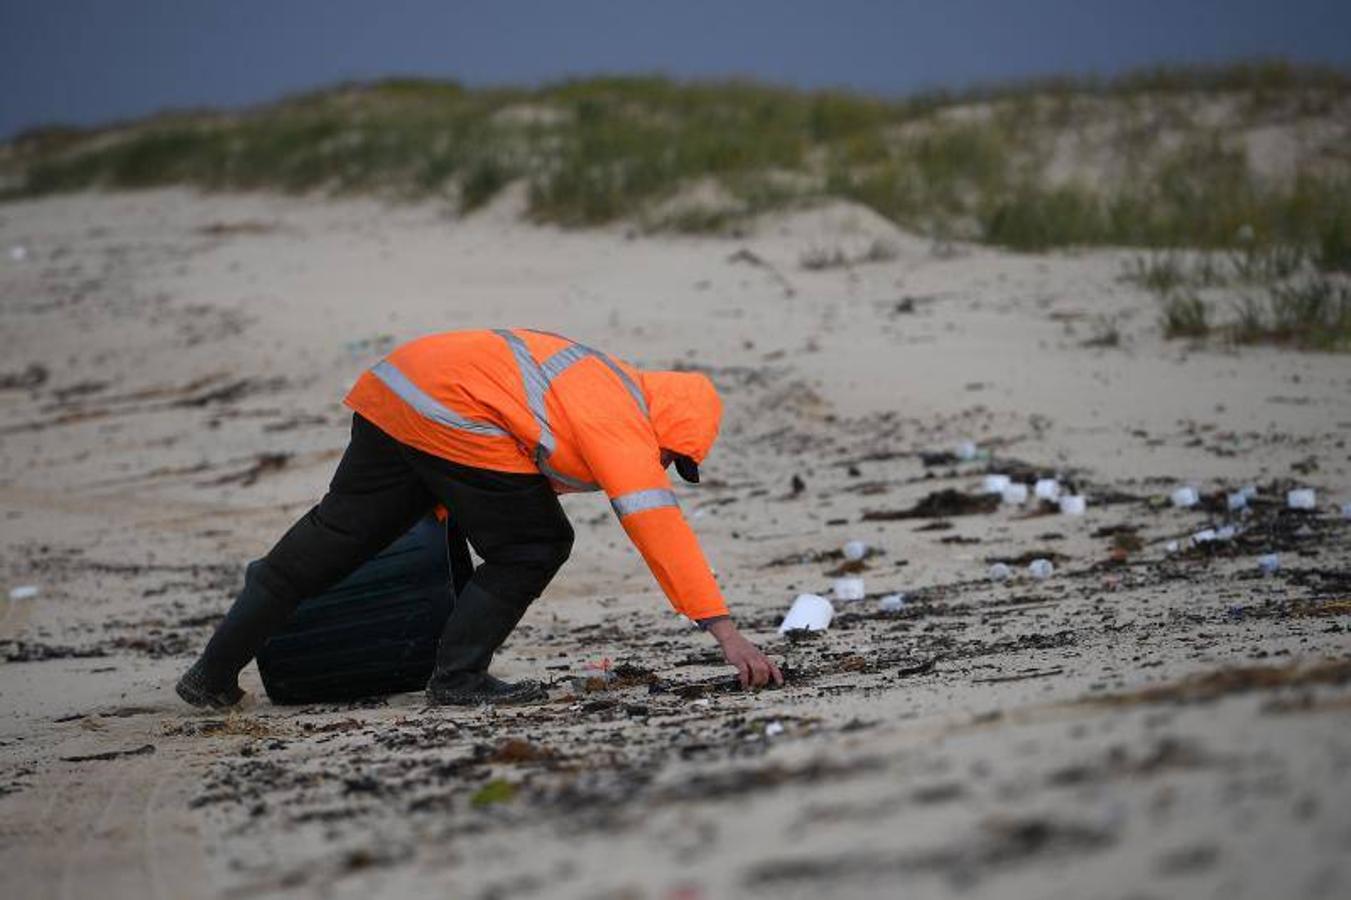 Grupos de limpieza limpian escombros en la playa en Hawks Nest cerca de Port Stephens, Nueva Gales del Sur (Australia). El buque portacontenedores YM Efficiency perdió 83 contenedores por la borda el 1 de junio y la basura de los contenedores se está acumulando en las playas a lo largo de la costa de Australia. 